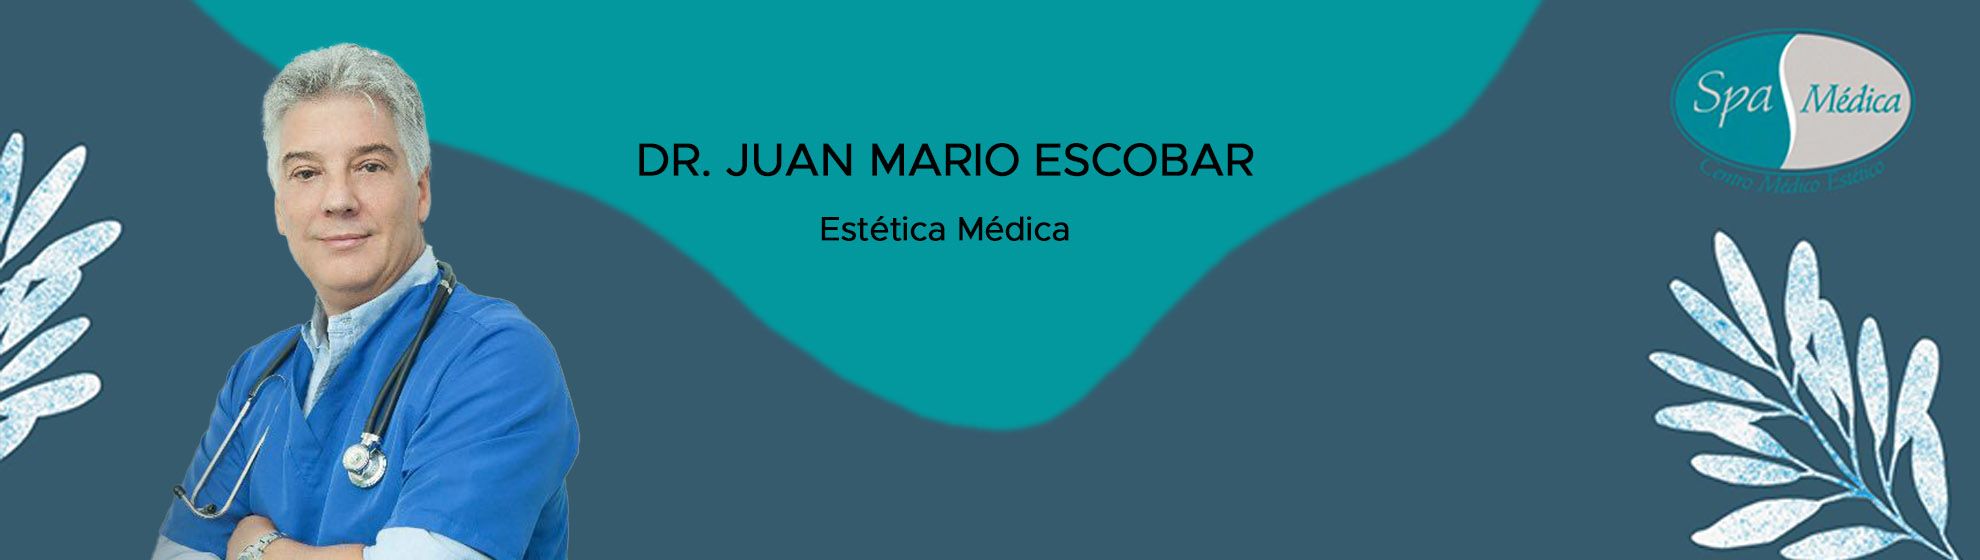 Dr. Juan Mario Escobar